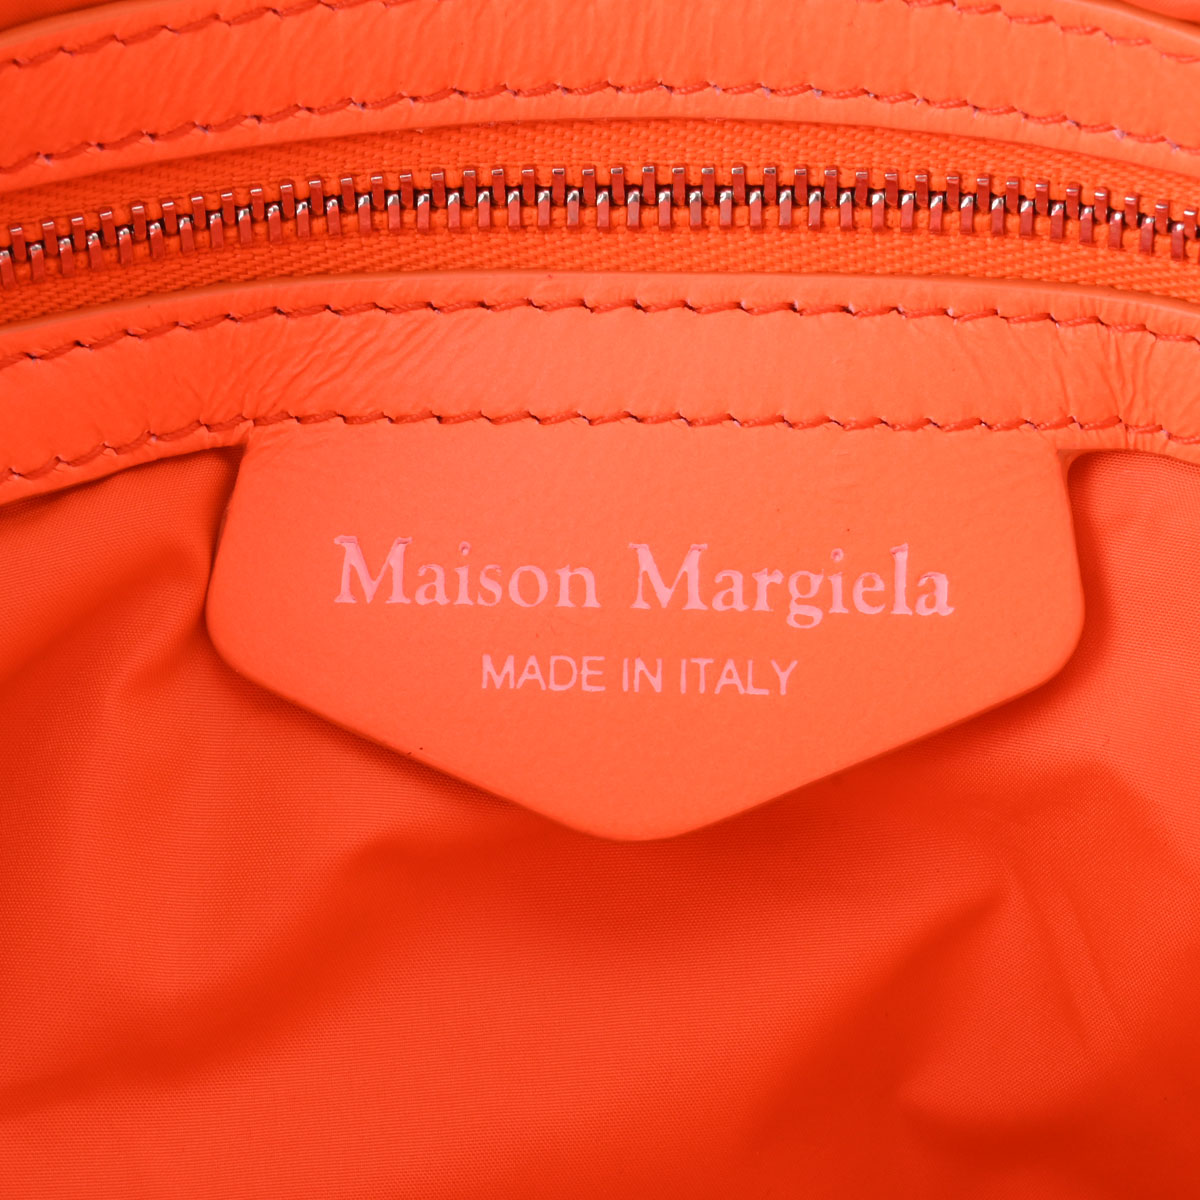 メゾン マルジェラ / Maison Margiela グラムスラム チェーンクラッチバッグ オレンジ/シルバー金具 S56WF0160 レザー  レディース バッグ 【中古】【bag】